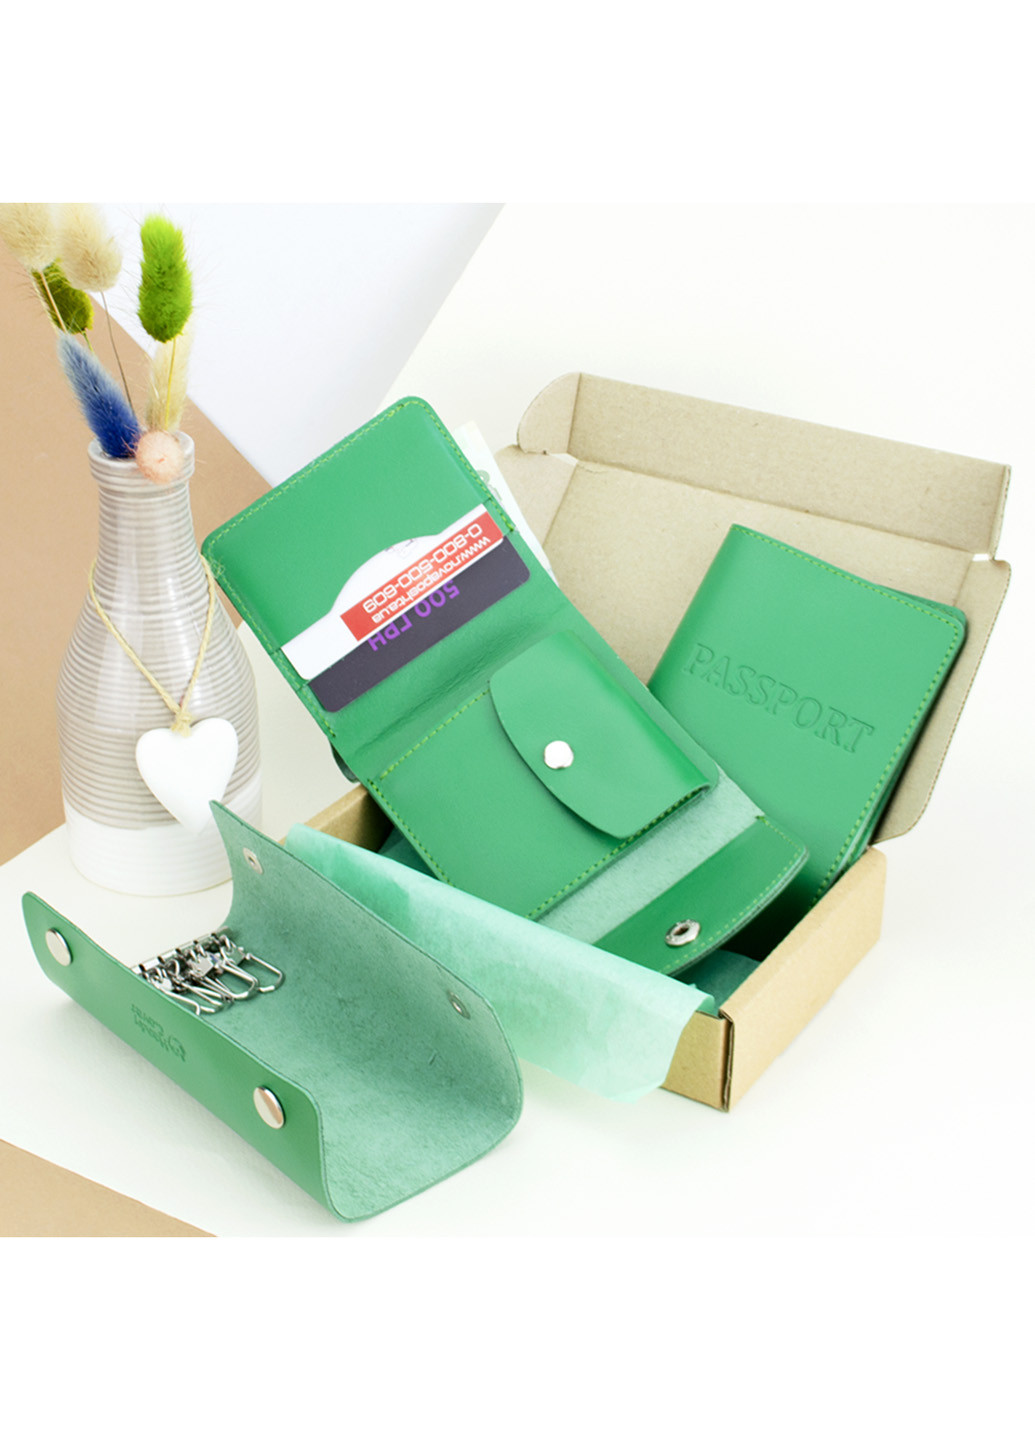 Подарочный набор женский №54 (зеленый) кошелек + ключница + обложка на паспорт HandyCover (253447179)